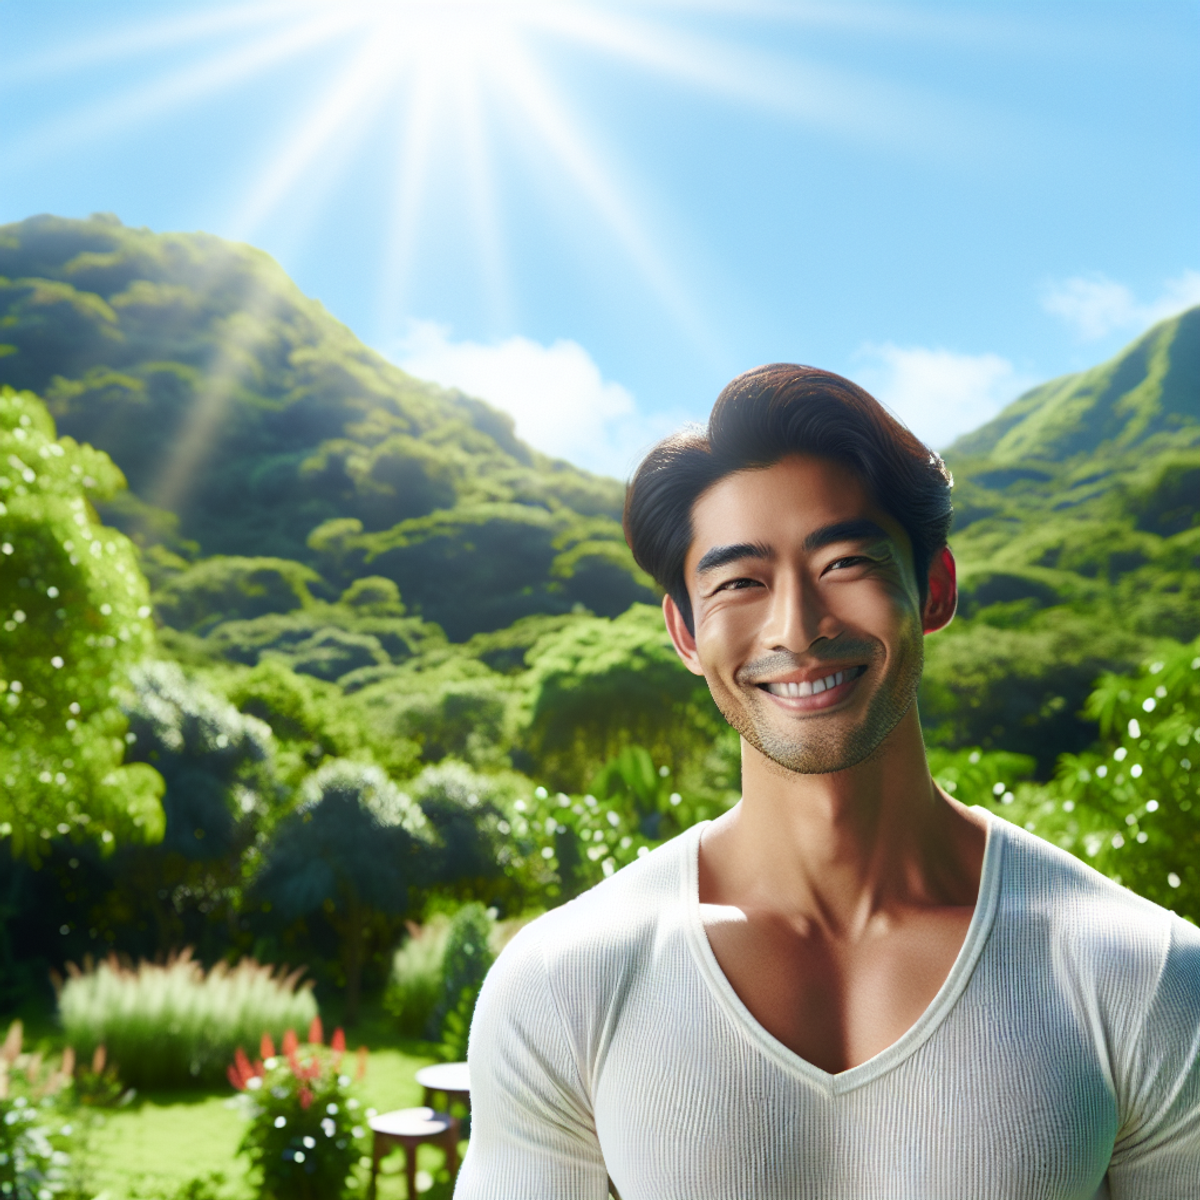 Un uomo che sorride in un ambiente lussureggiante e soleggiato all'aperto.